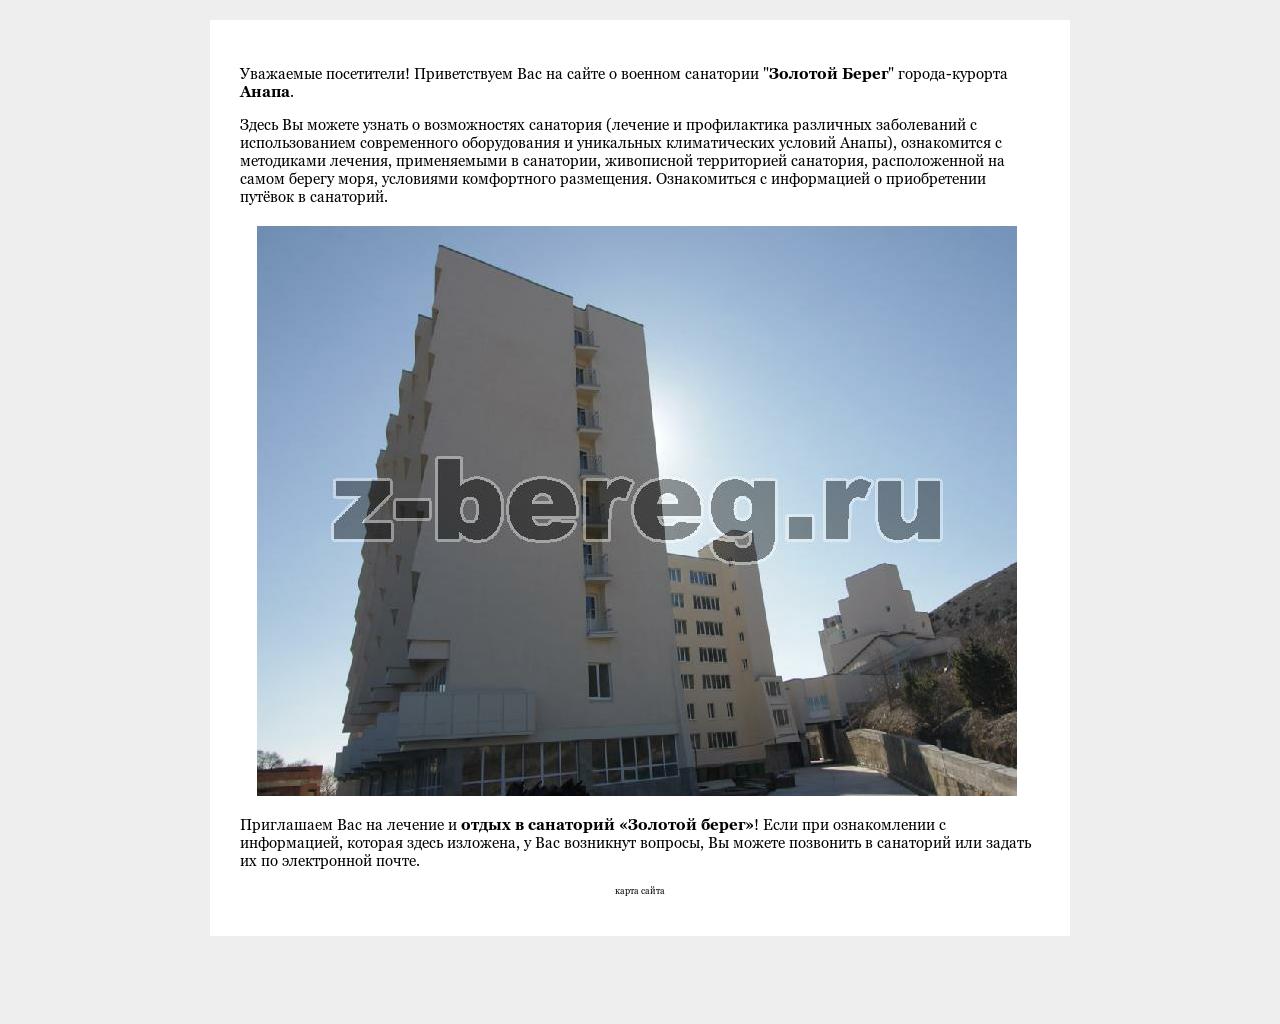 Изображение сайта z-bereg.ru в разрешении 1280x1024